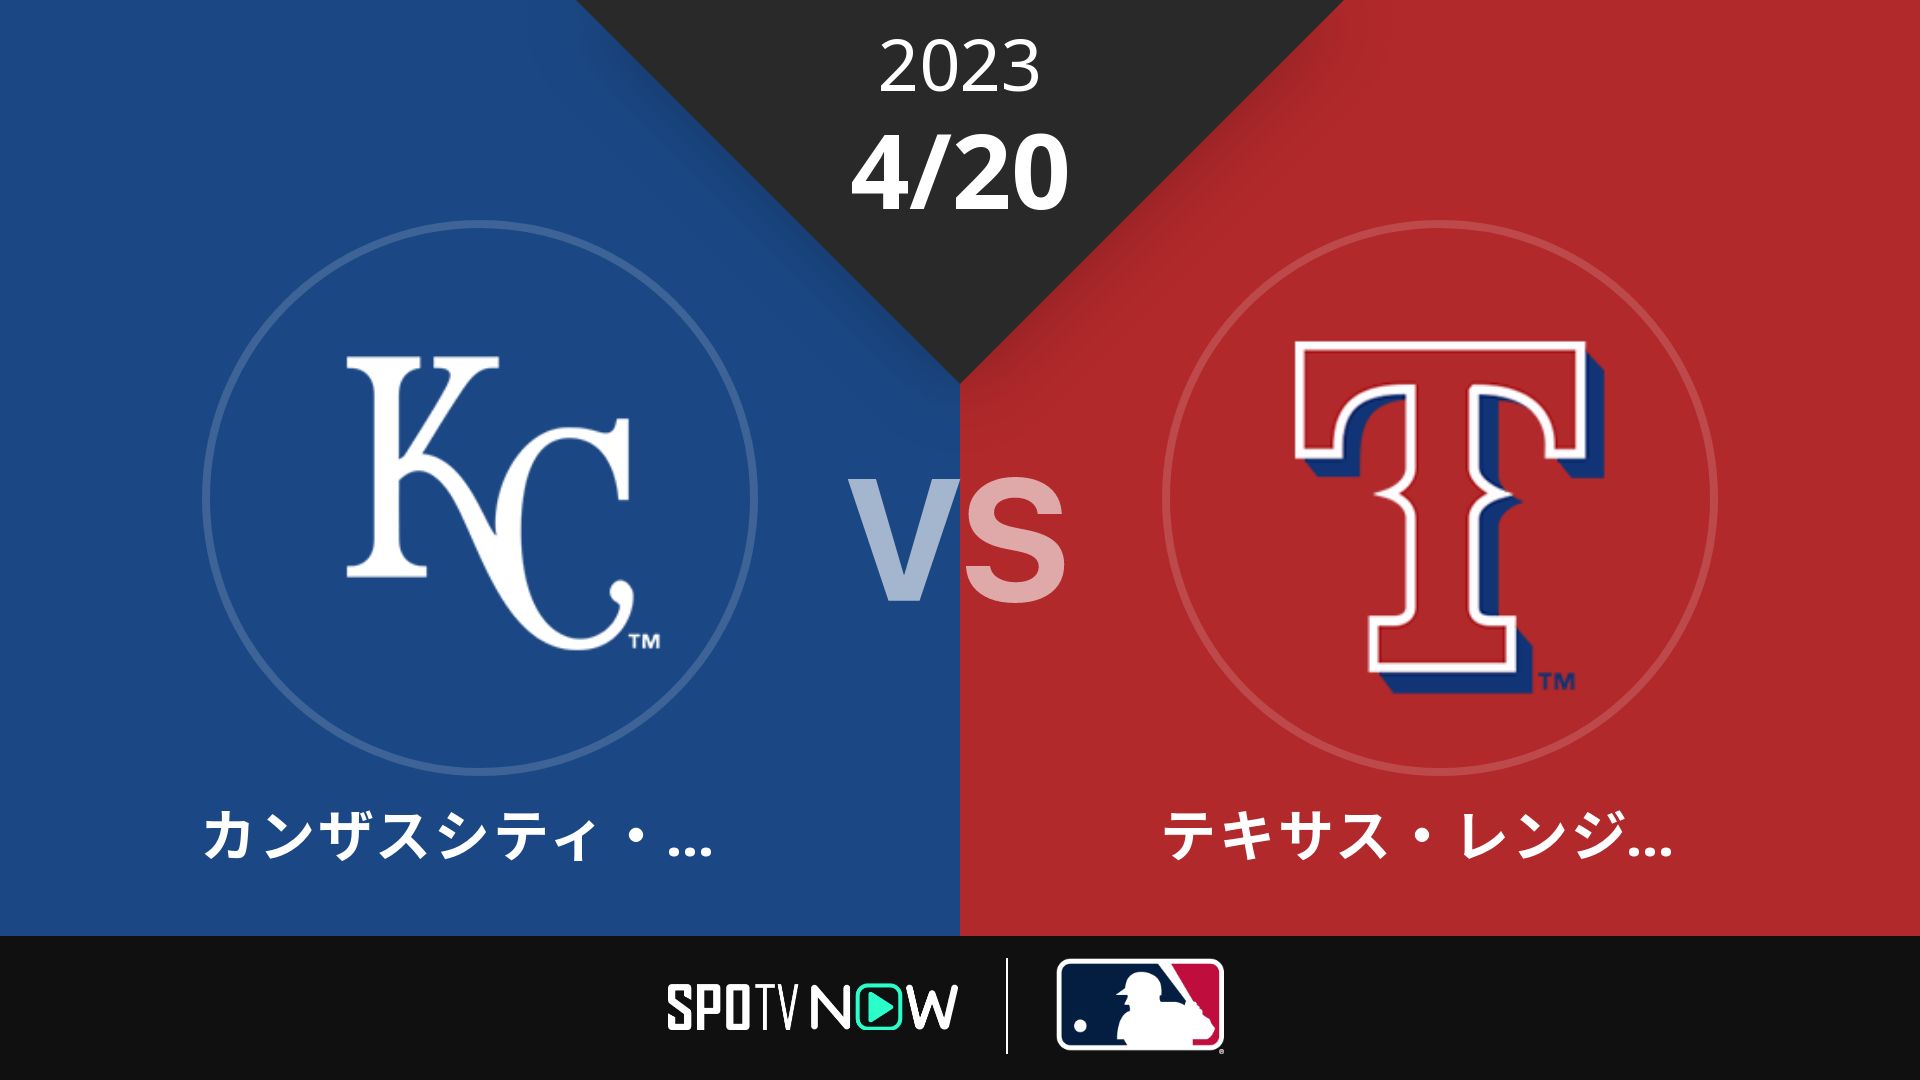 2023/4/20 ロイヤルズ vs レンジャーズ [MLB]